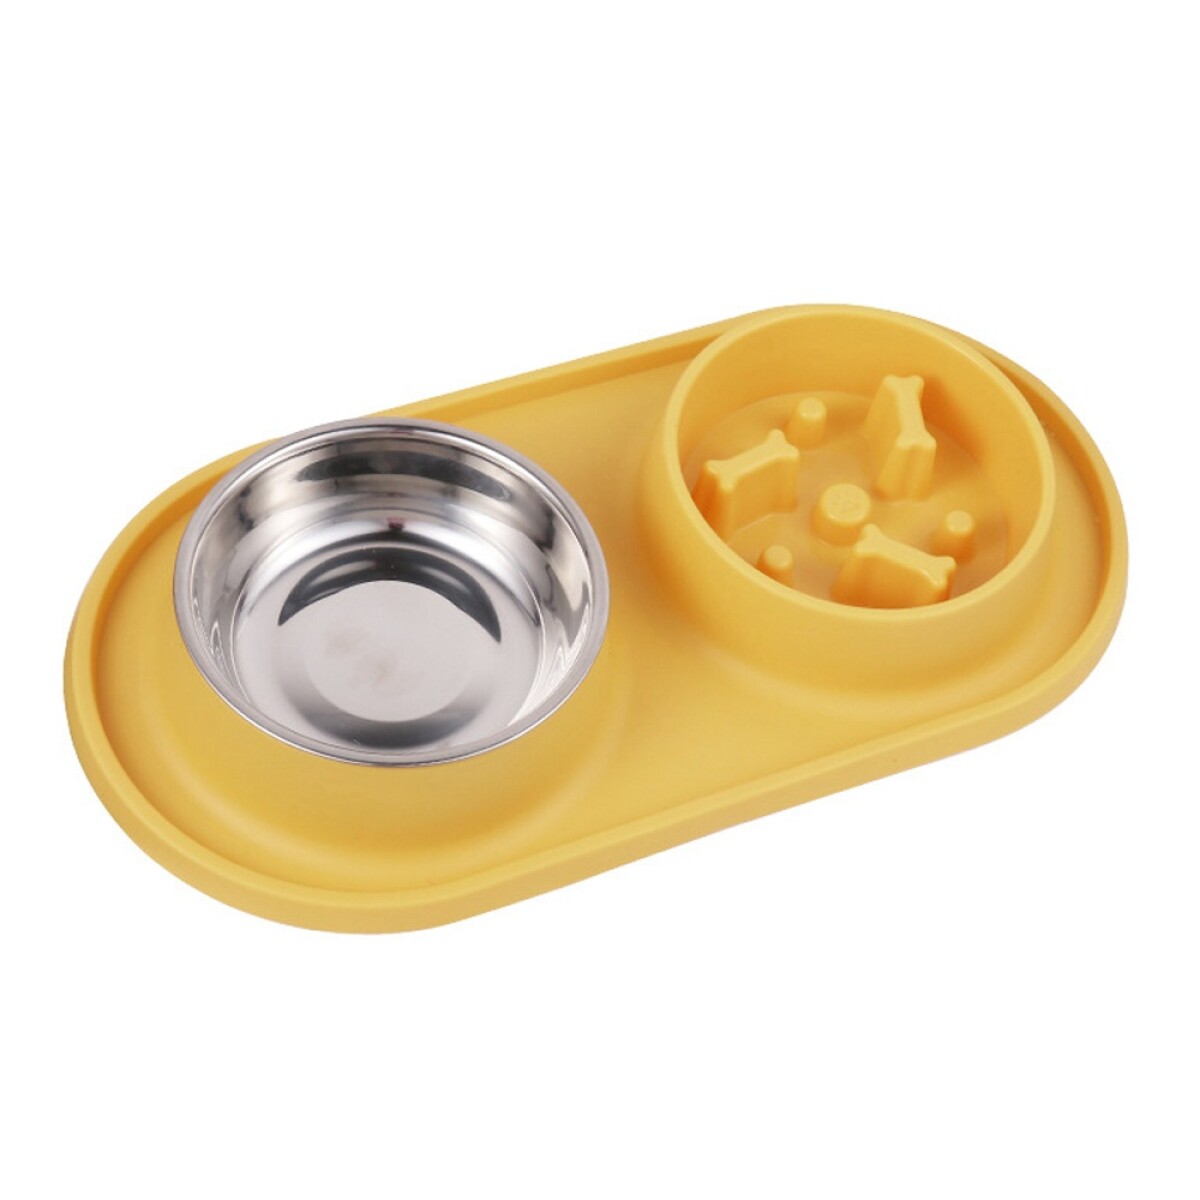 Plato Doble en Silicona con Comedero Come Lento para Mascotas - Amarillo 